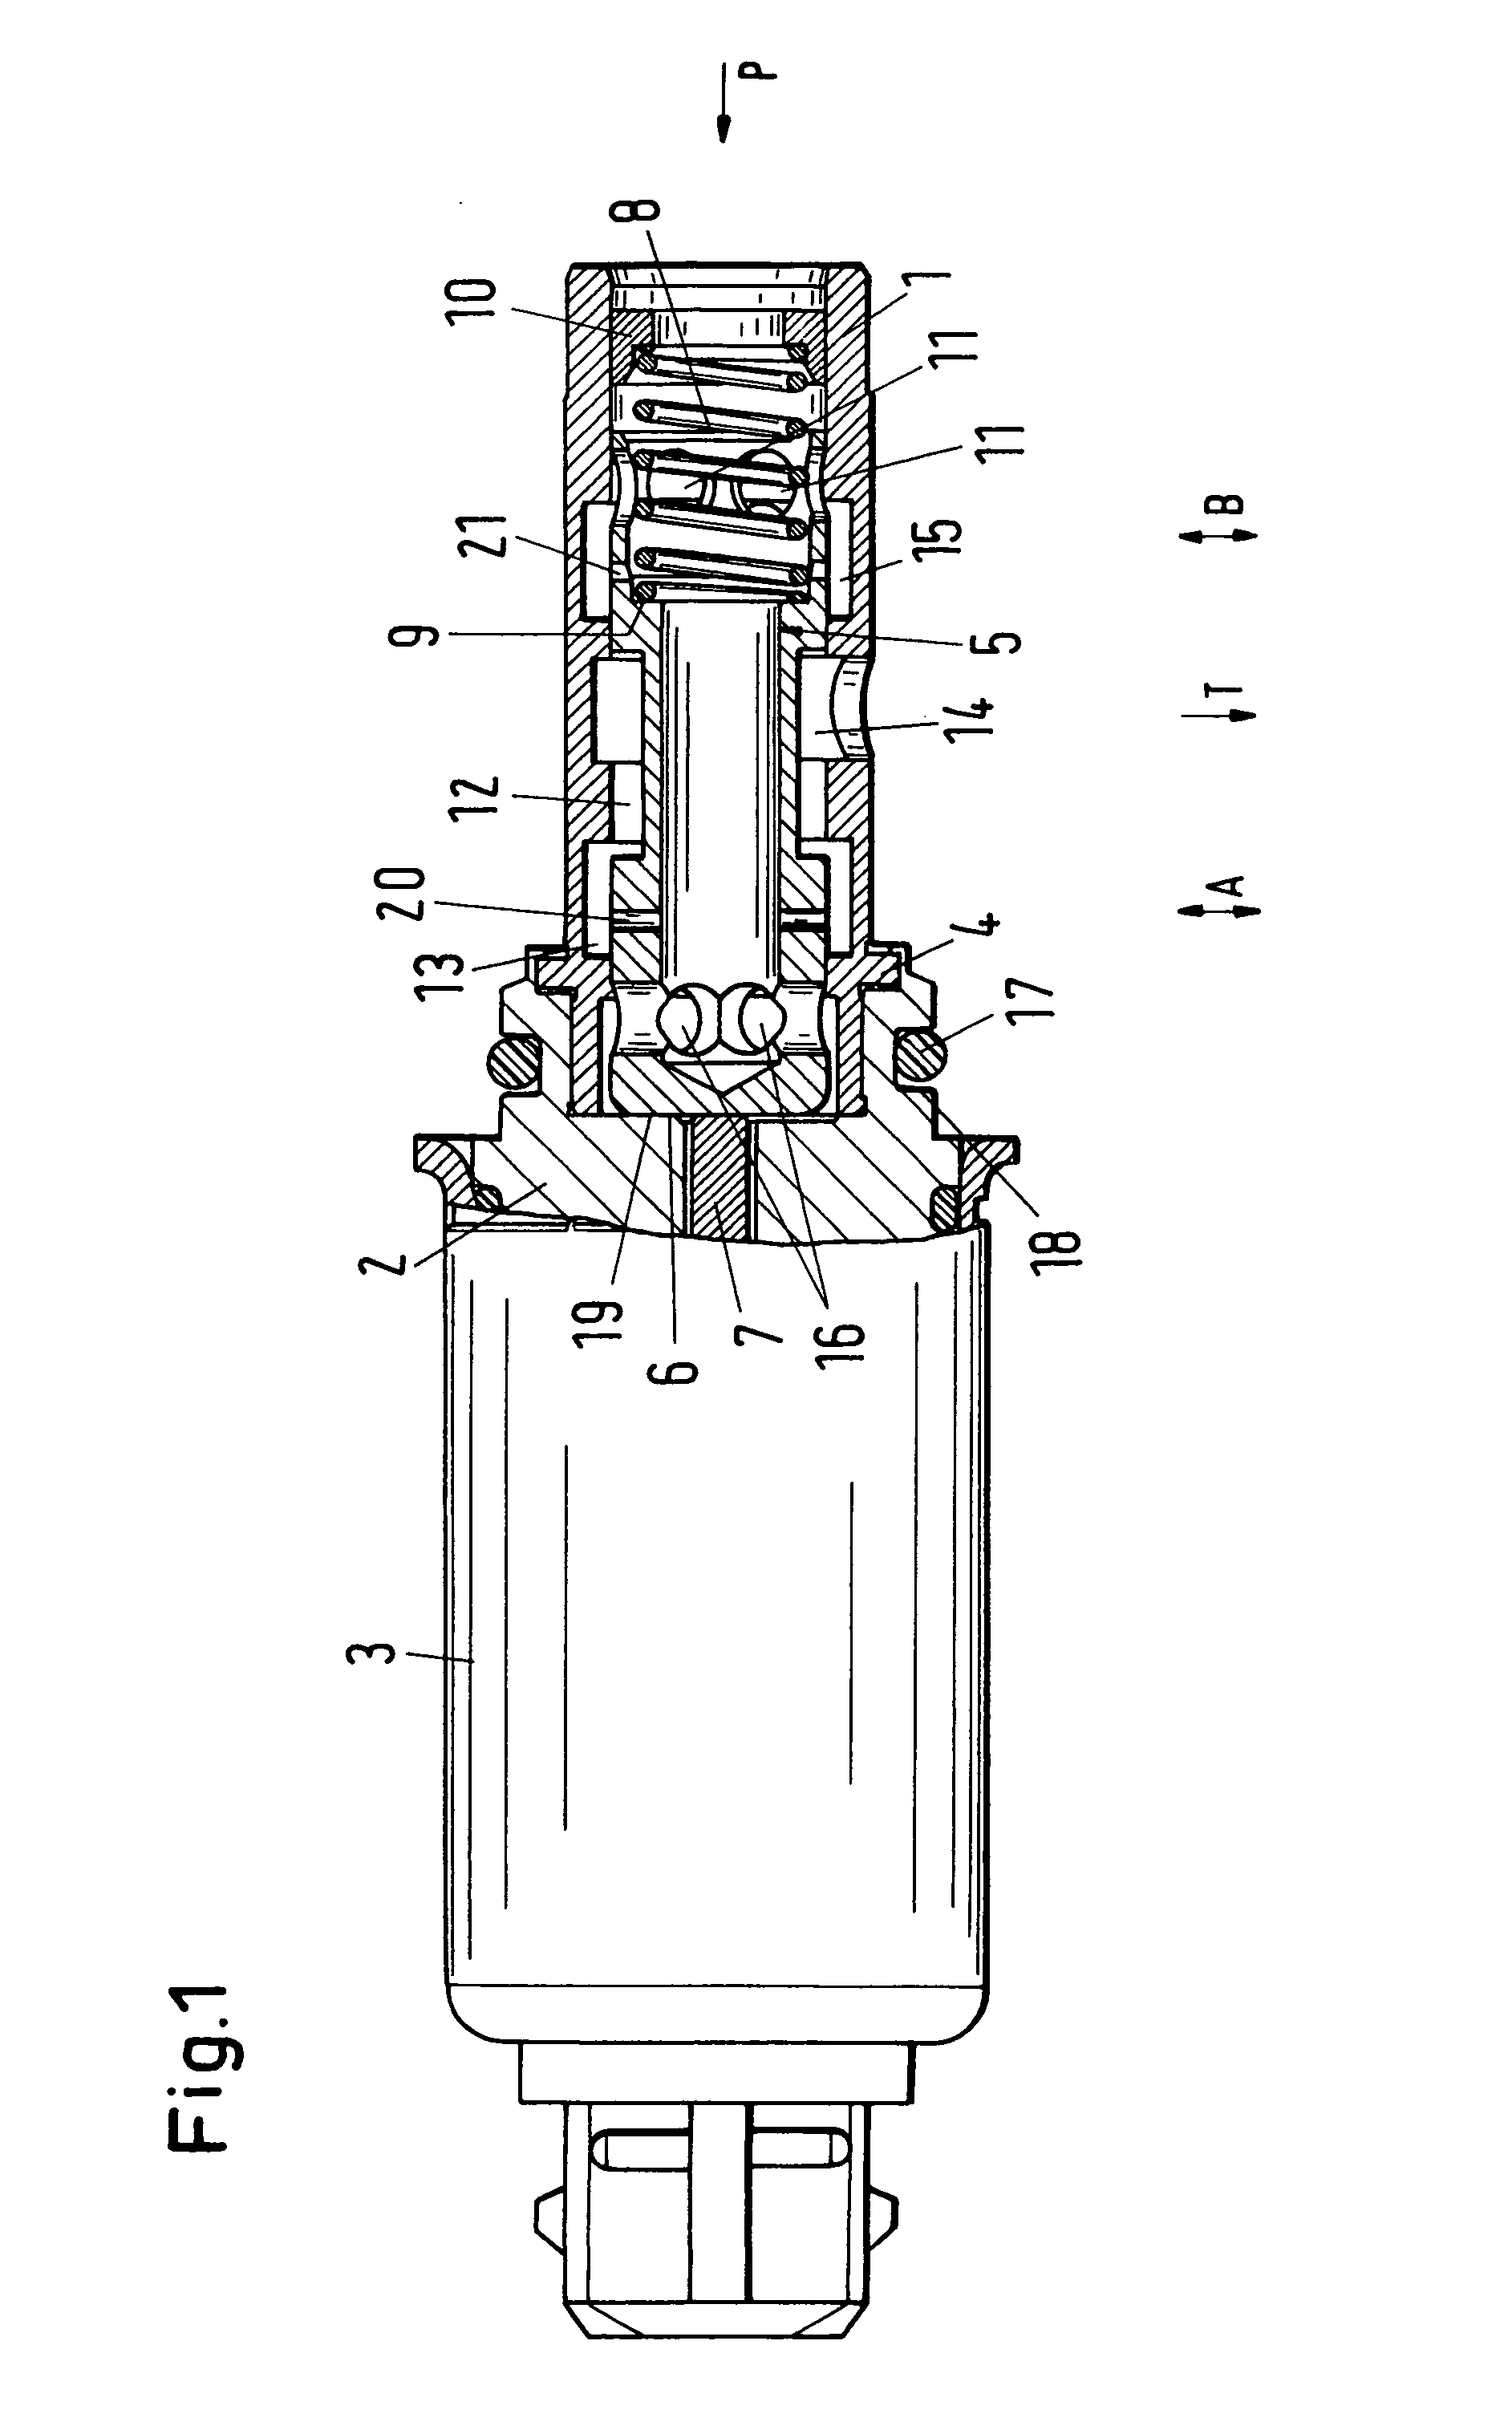 Proportional solenoid valve for a camshaft adjusting device of motor vehicles